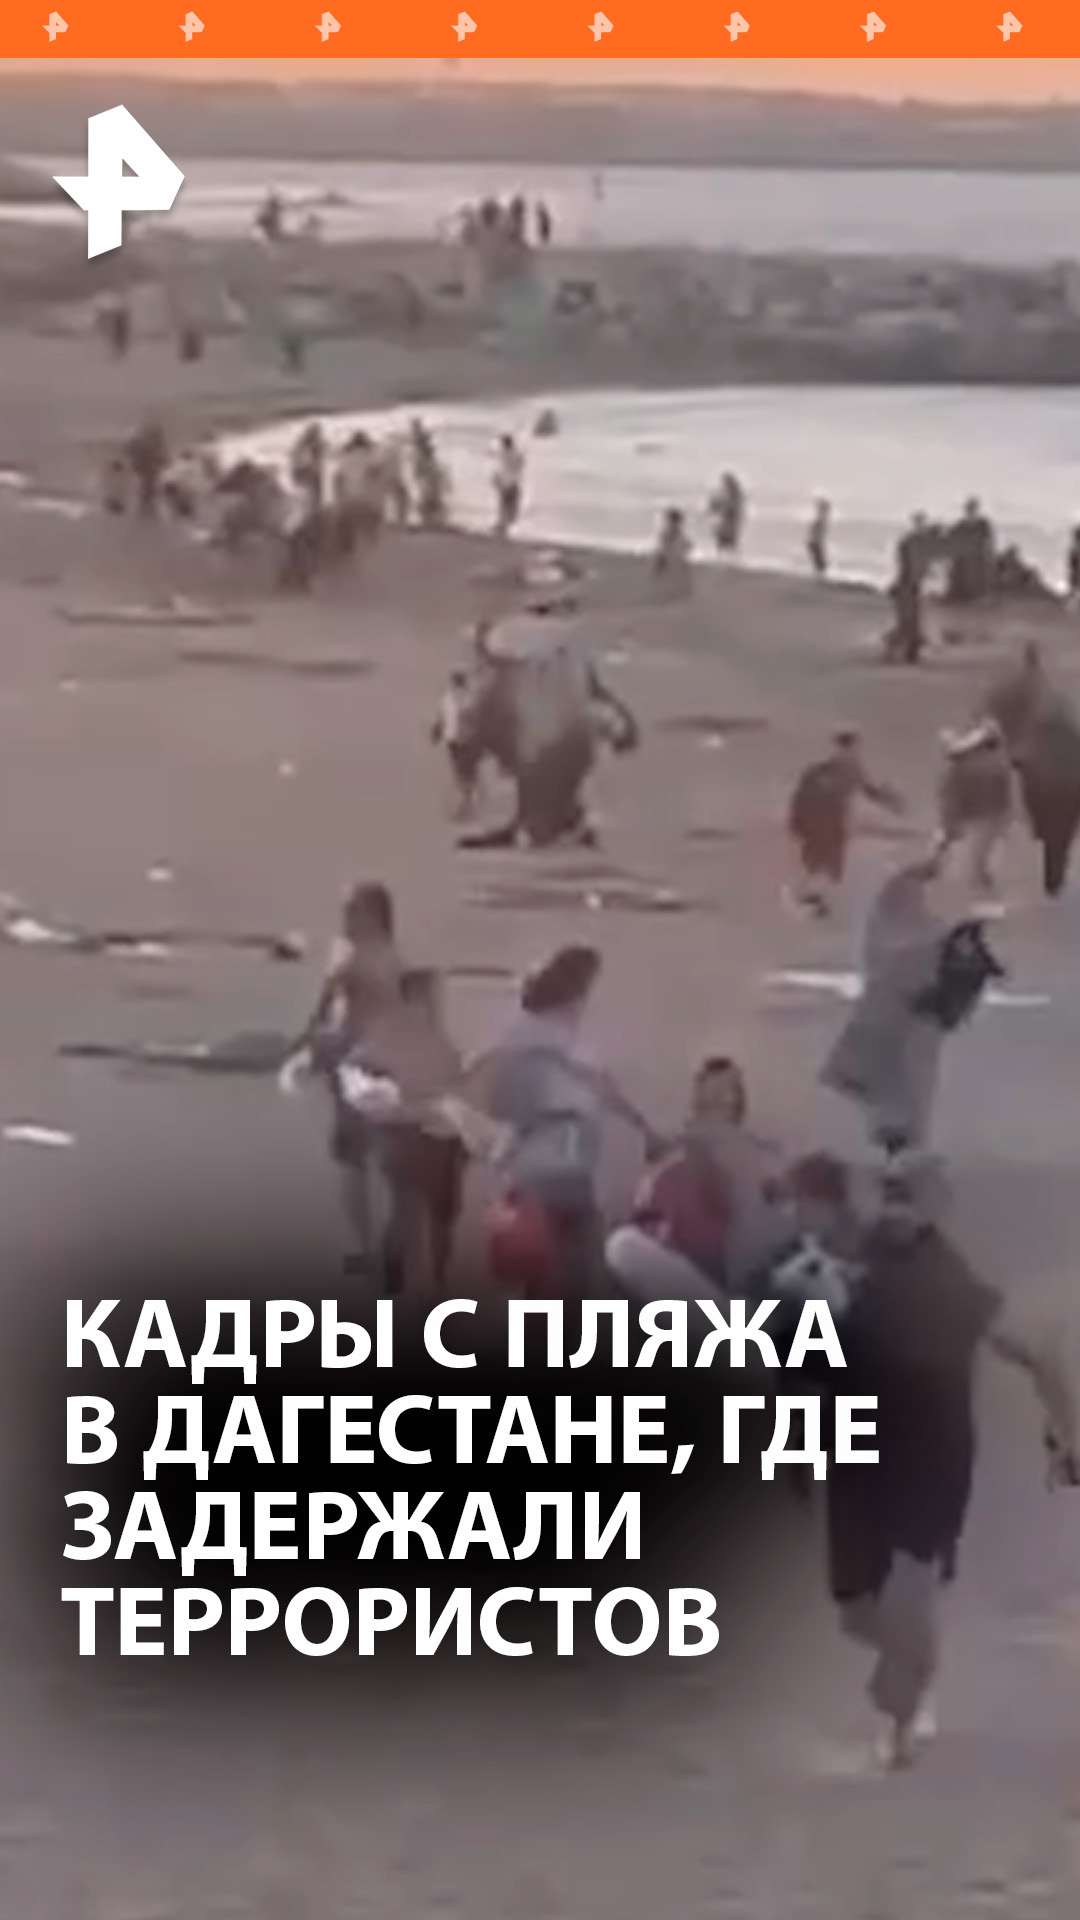 "Все, задержали! Все!": кадры с одного из пляжей в Дагестане, где задержали несколько террористов